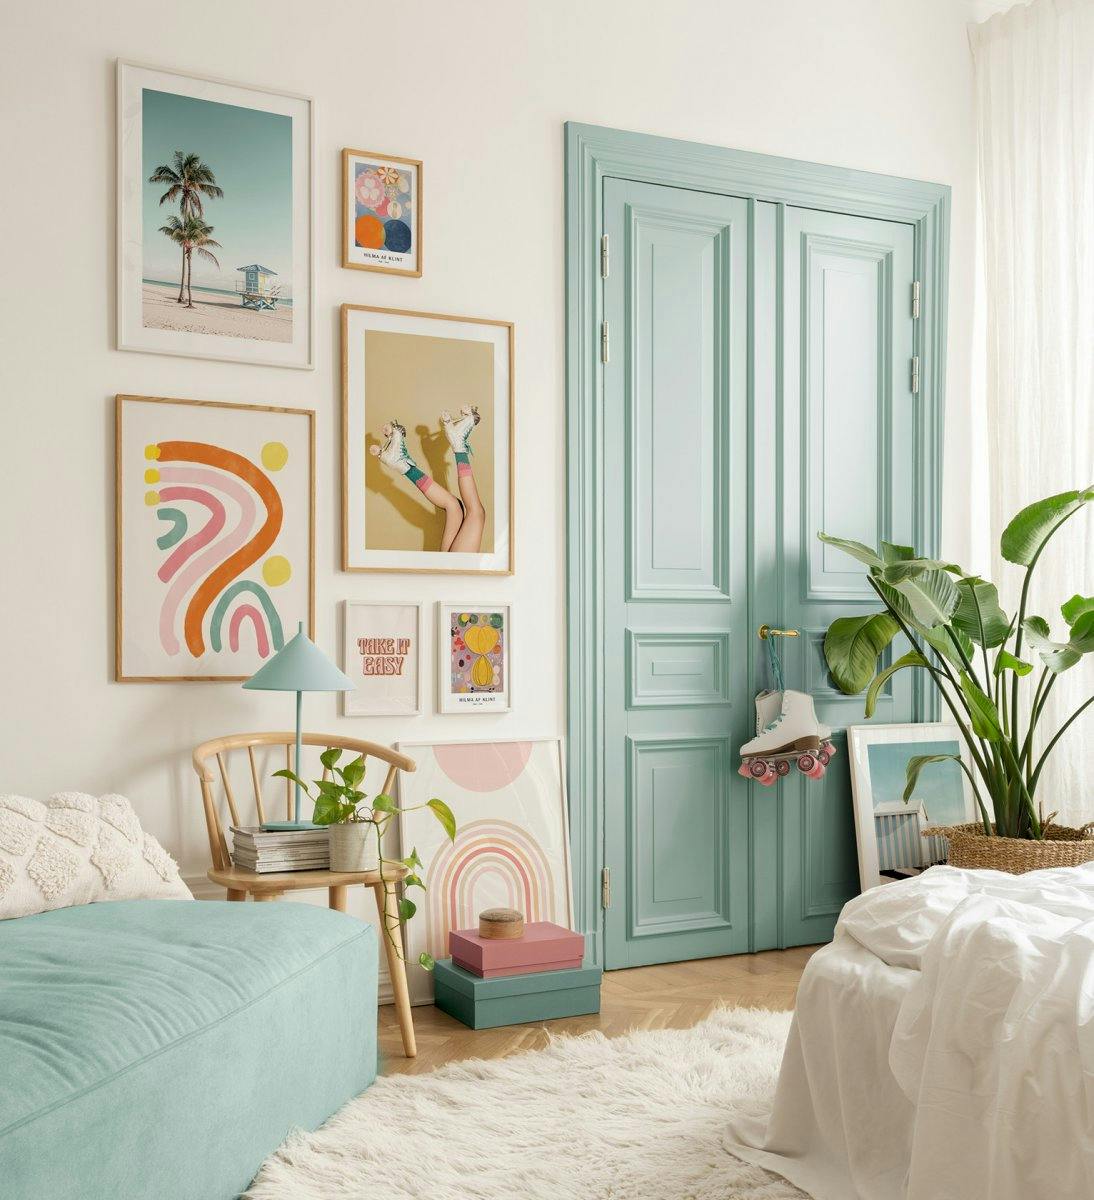 Fotografier og citatplakater i legesyge farver, der giver retro stemning i soveværelset eller stuen